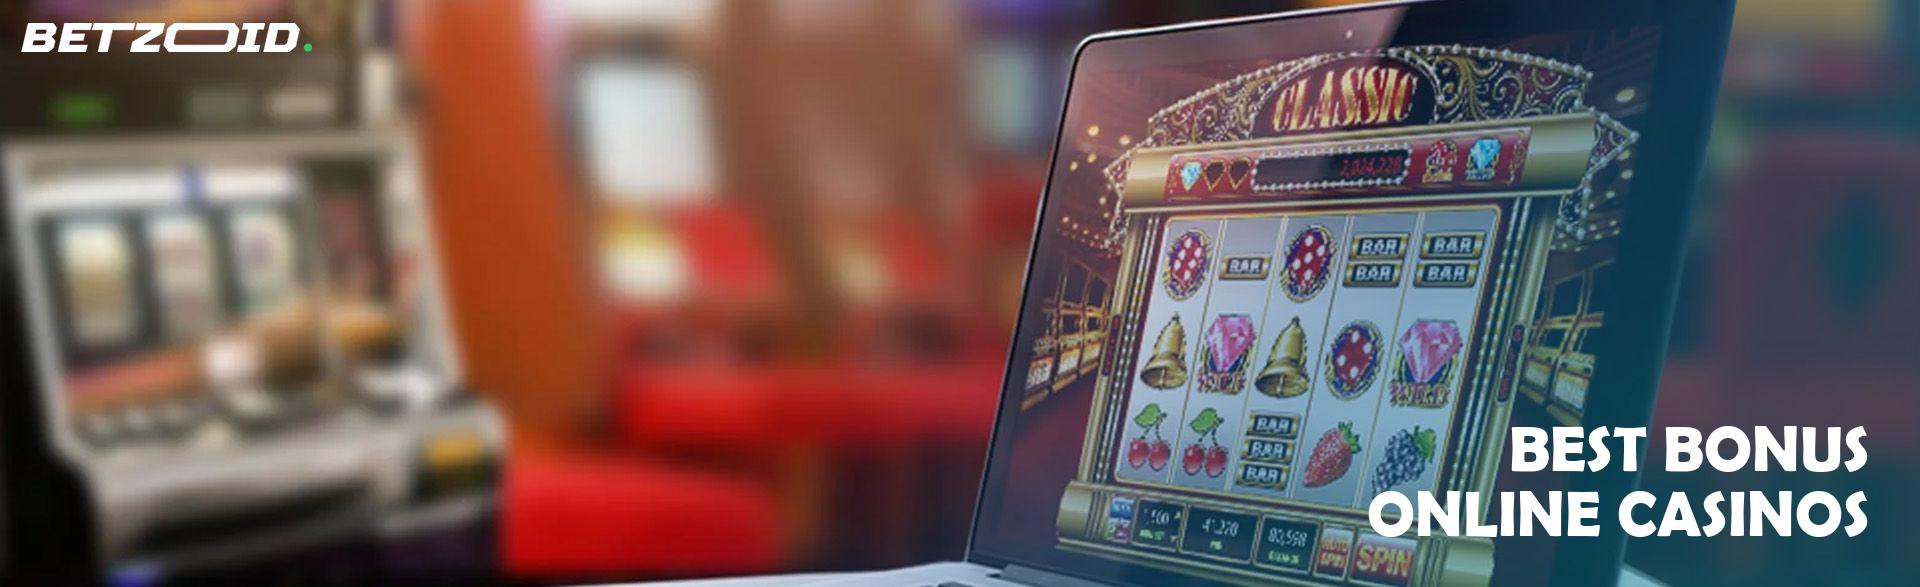 Best Bonus Online Casinos.